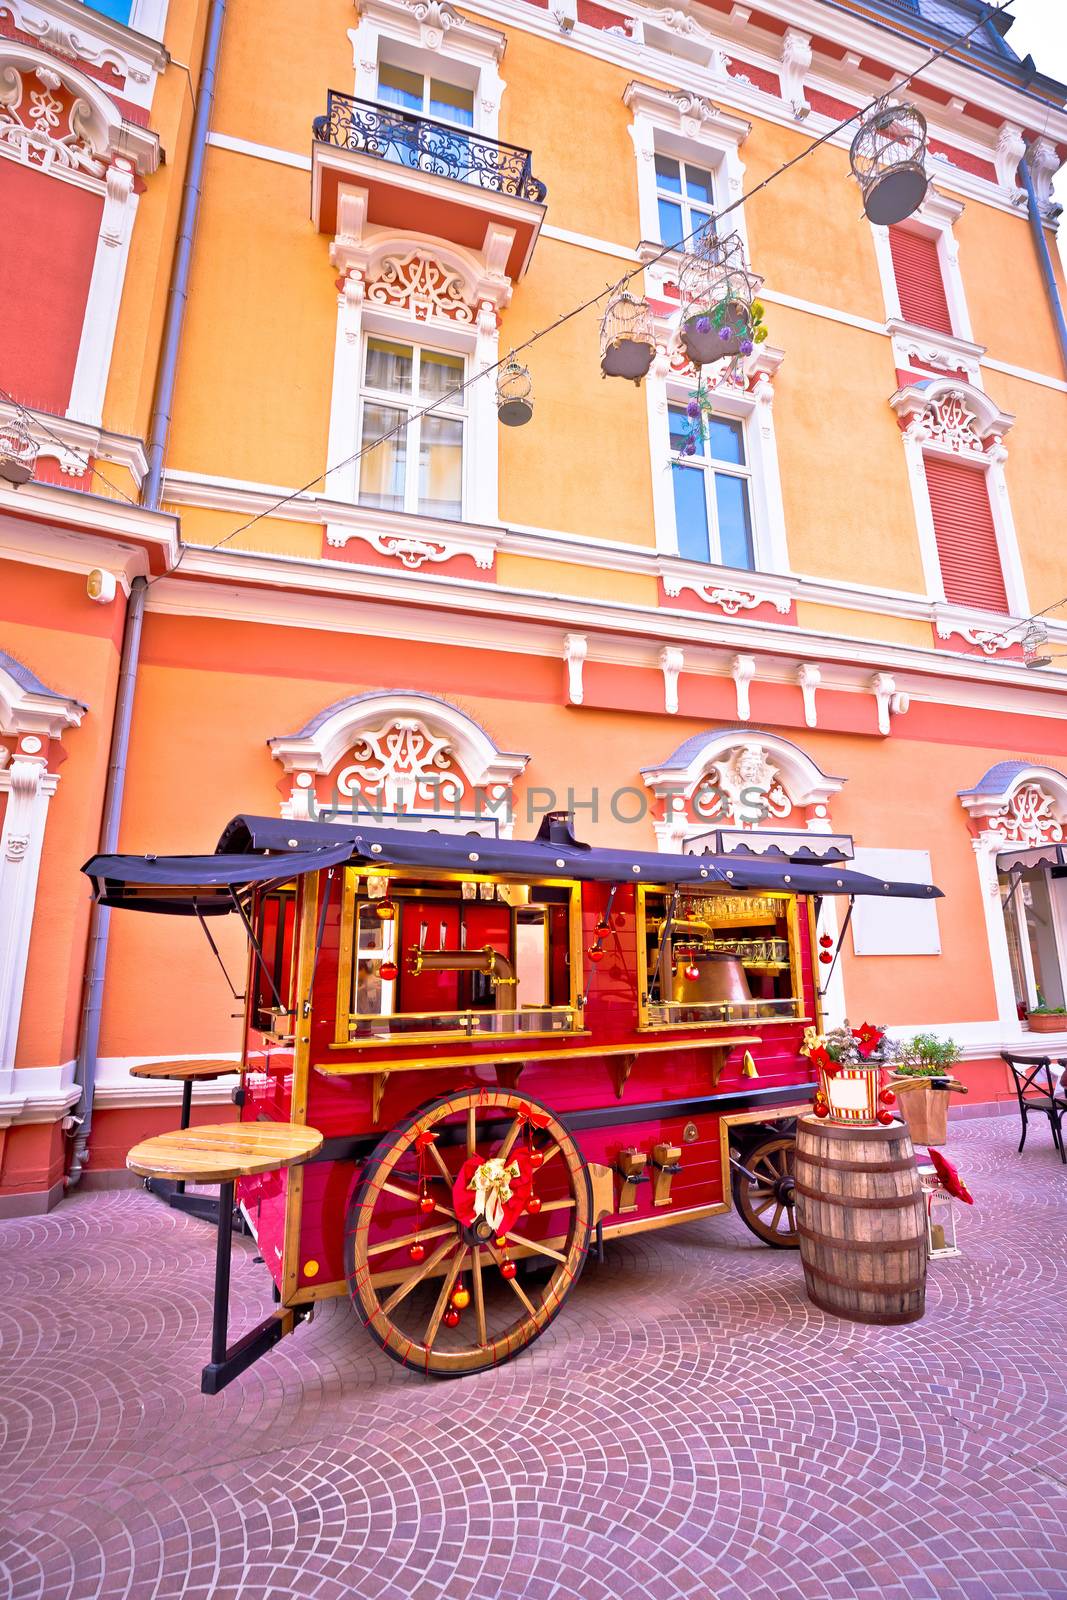 Christmas kiosk wagon street view in Opatija by xbrchx